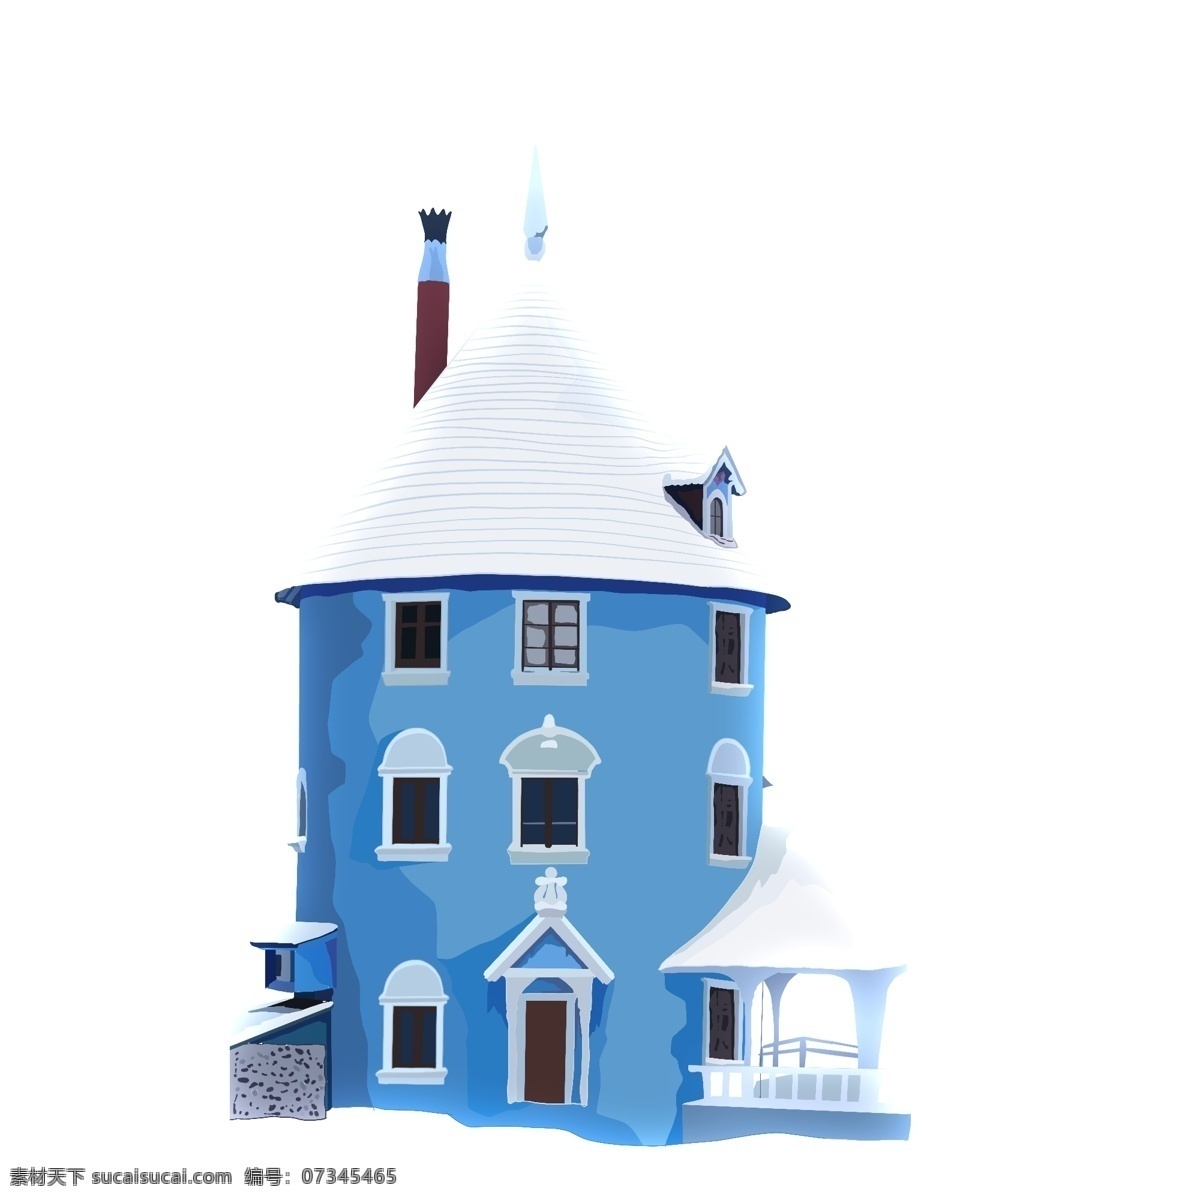 蓝色 手绘 城堡 商用 元素 房子 建筑 插画 小清新